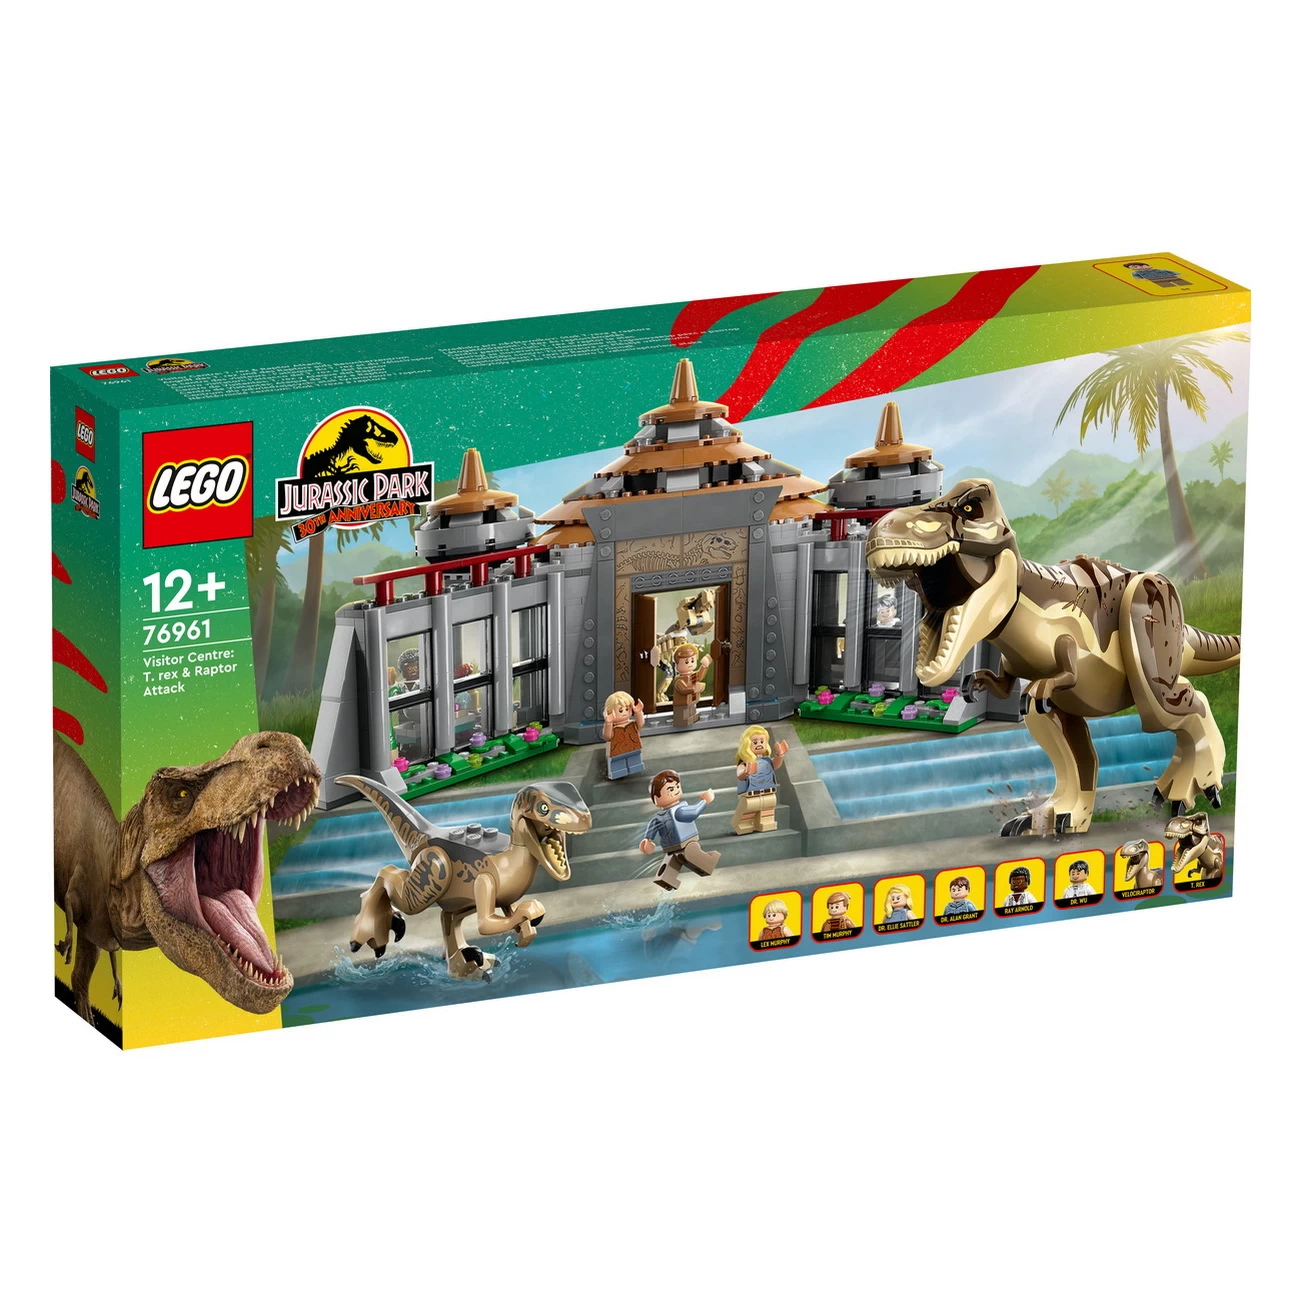 LEGO Jurassic Park - Angriff T-Rex Raptor aufs Besucherzentrum (76961)